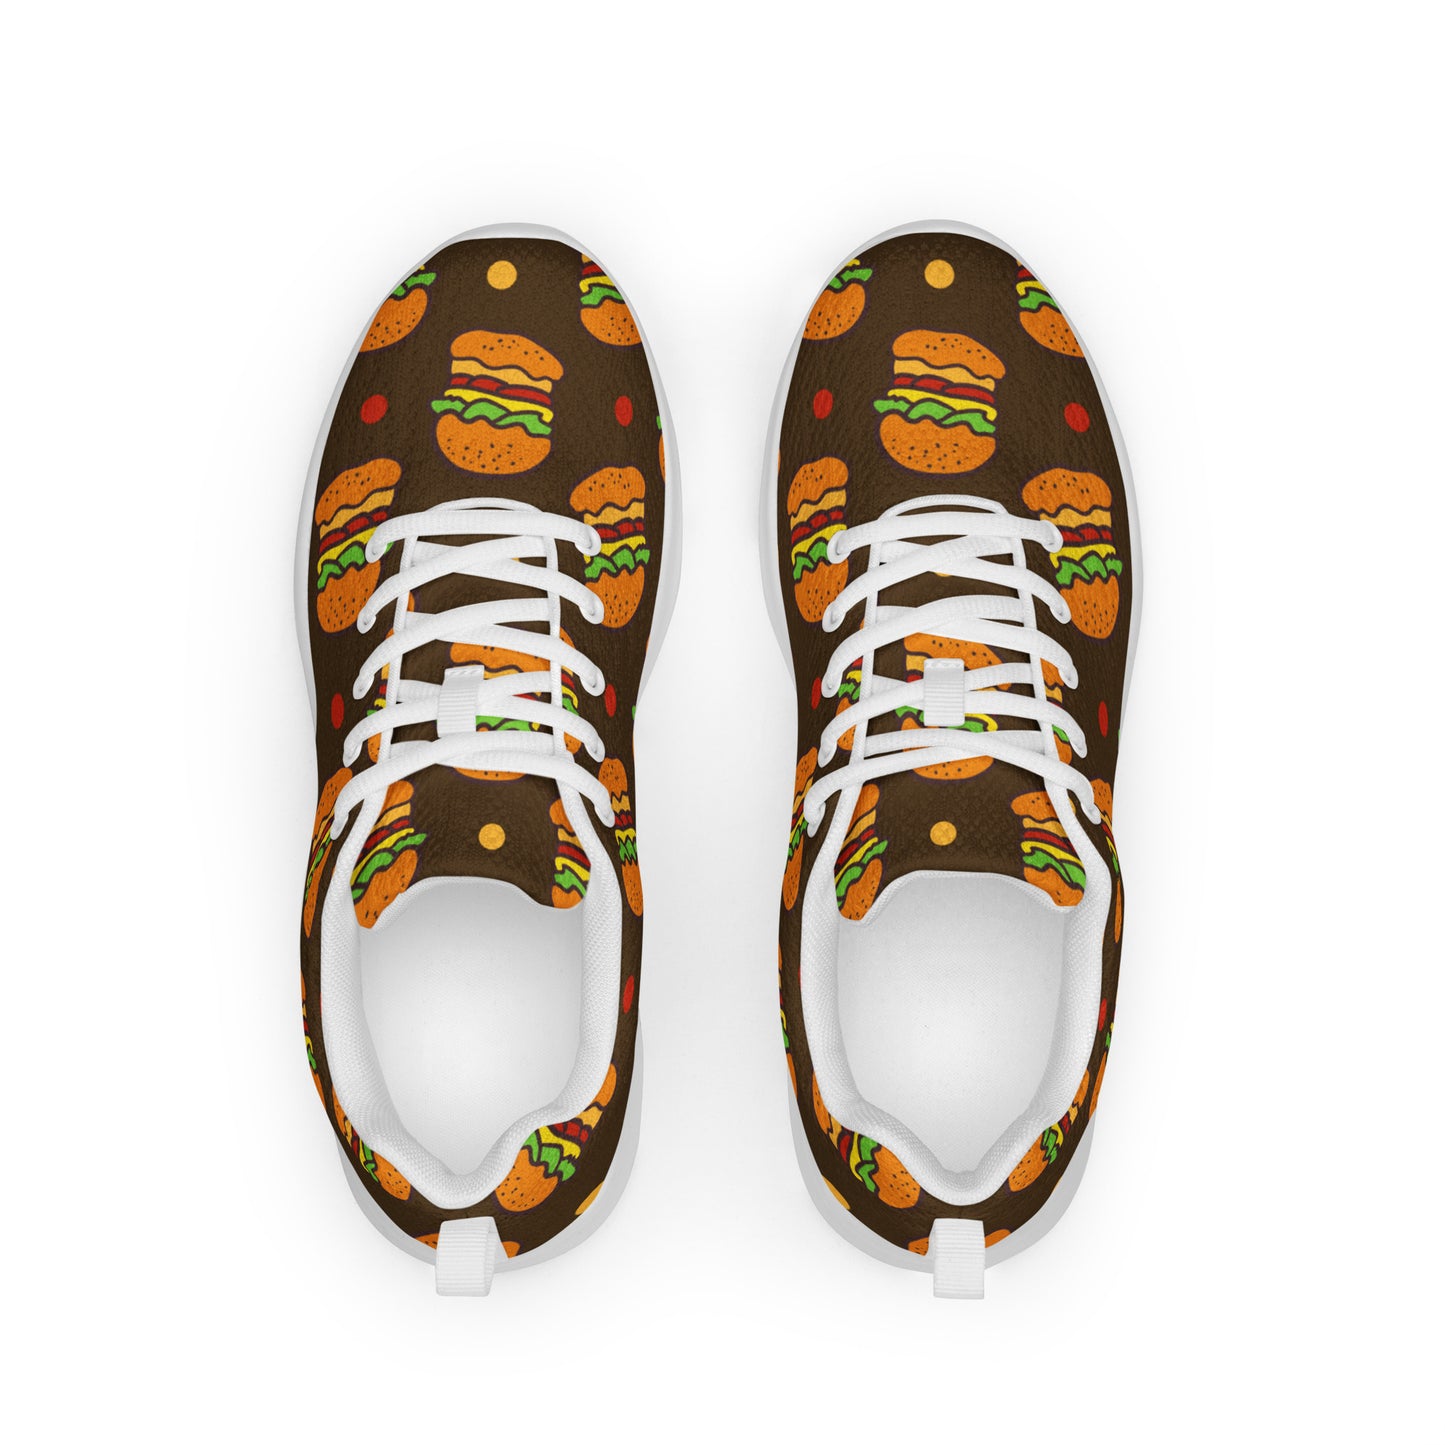 Burgers - Men’s athletic shoes Mens Athletic Shoes